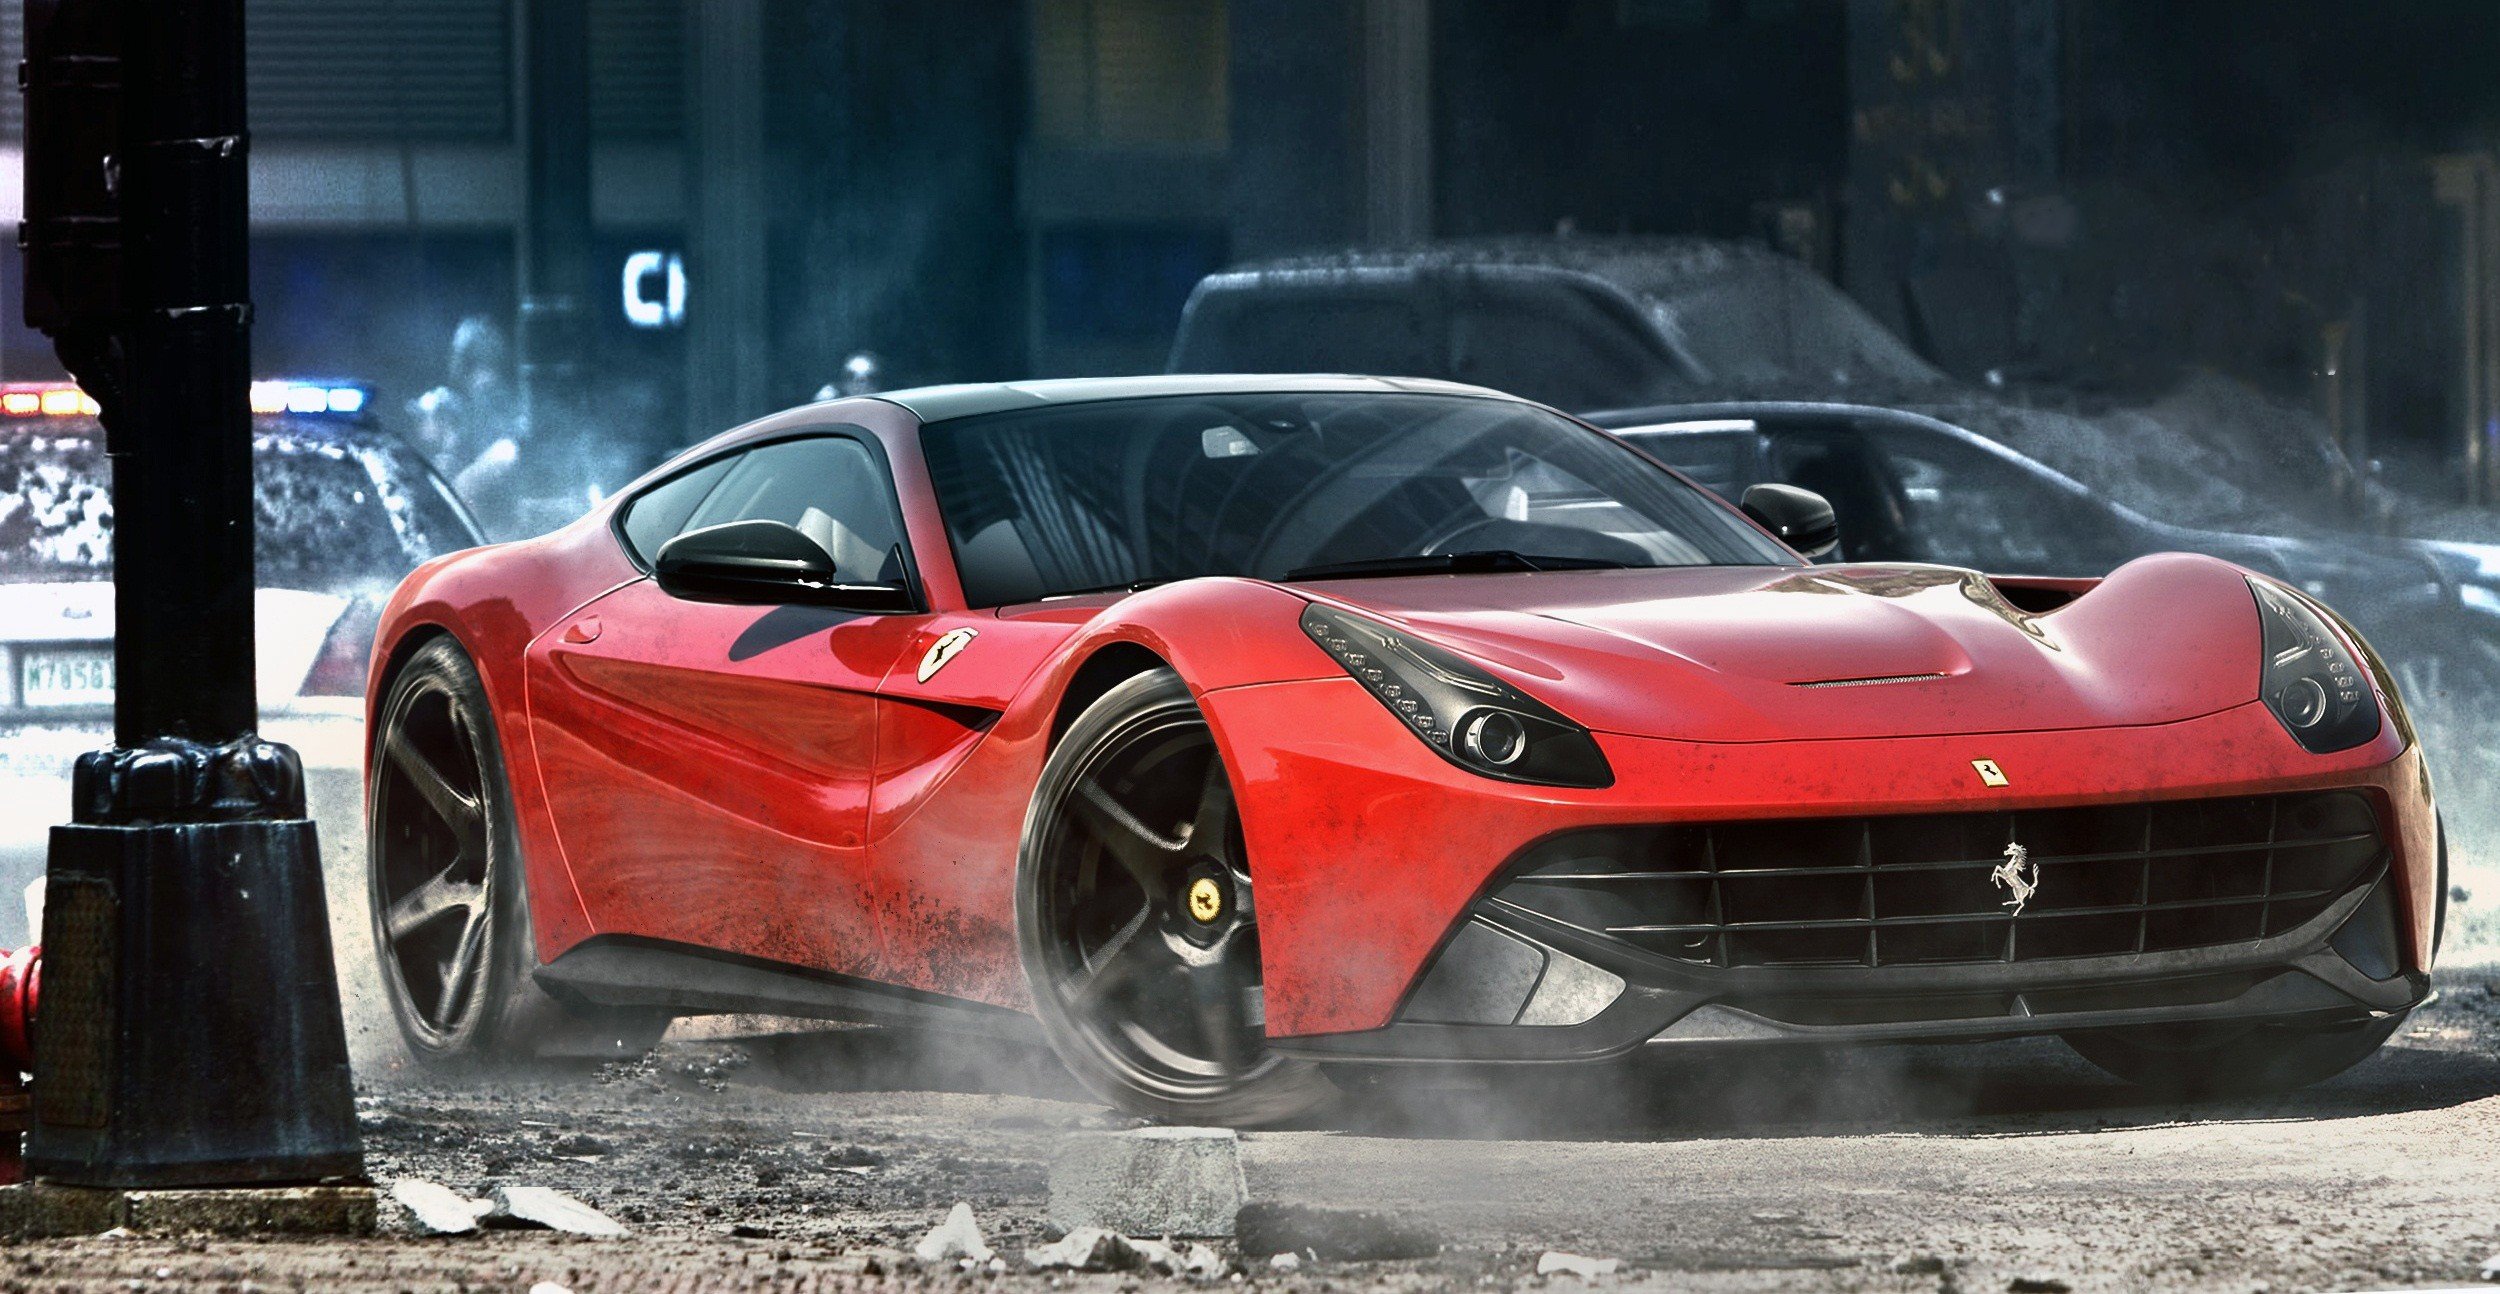 Ferrari, Ferrari F12, Street, Car, Need for Speed Wallpaper